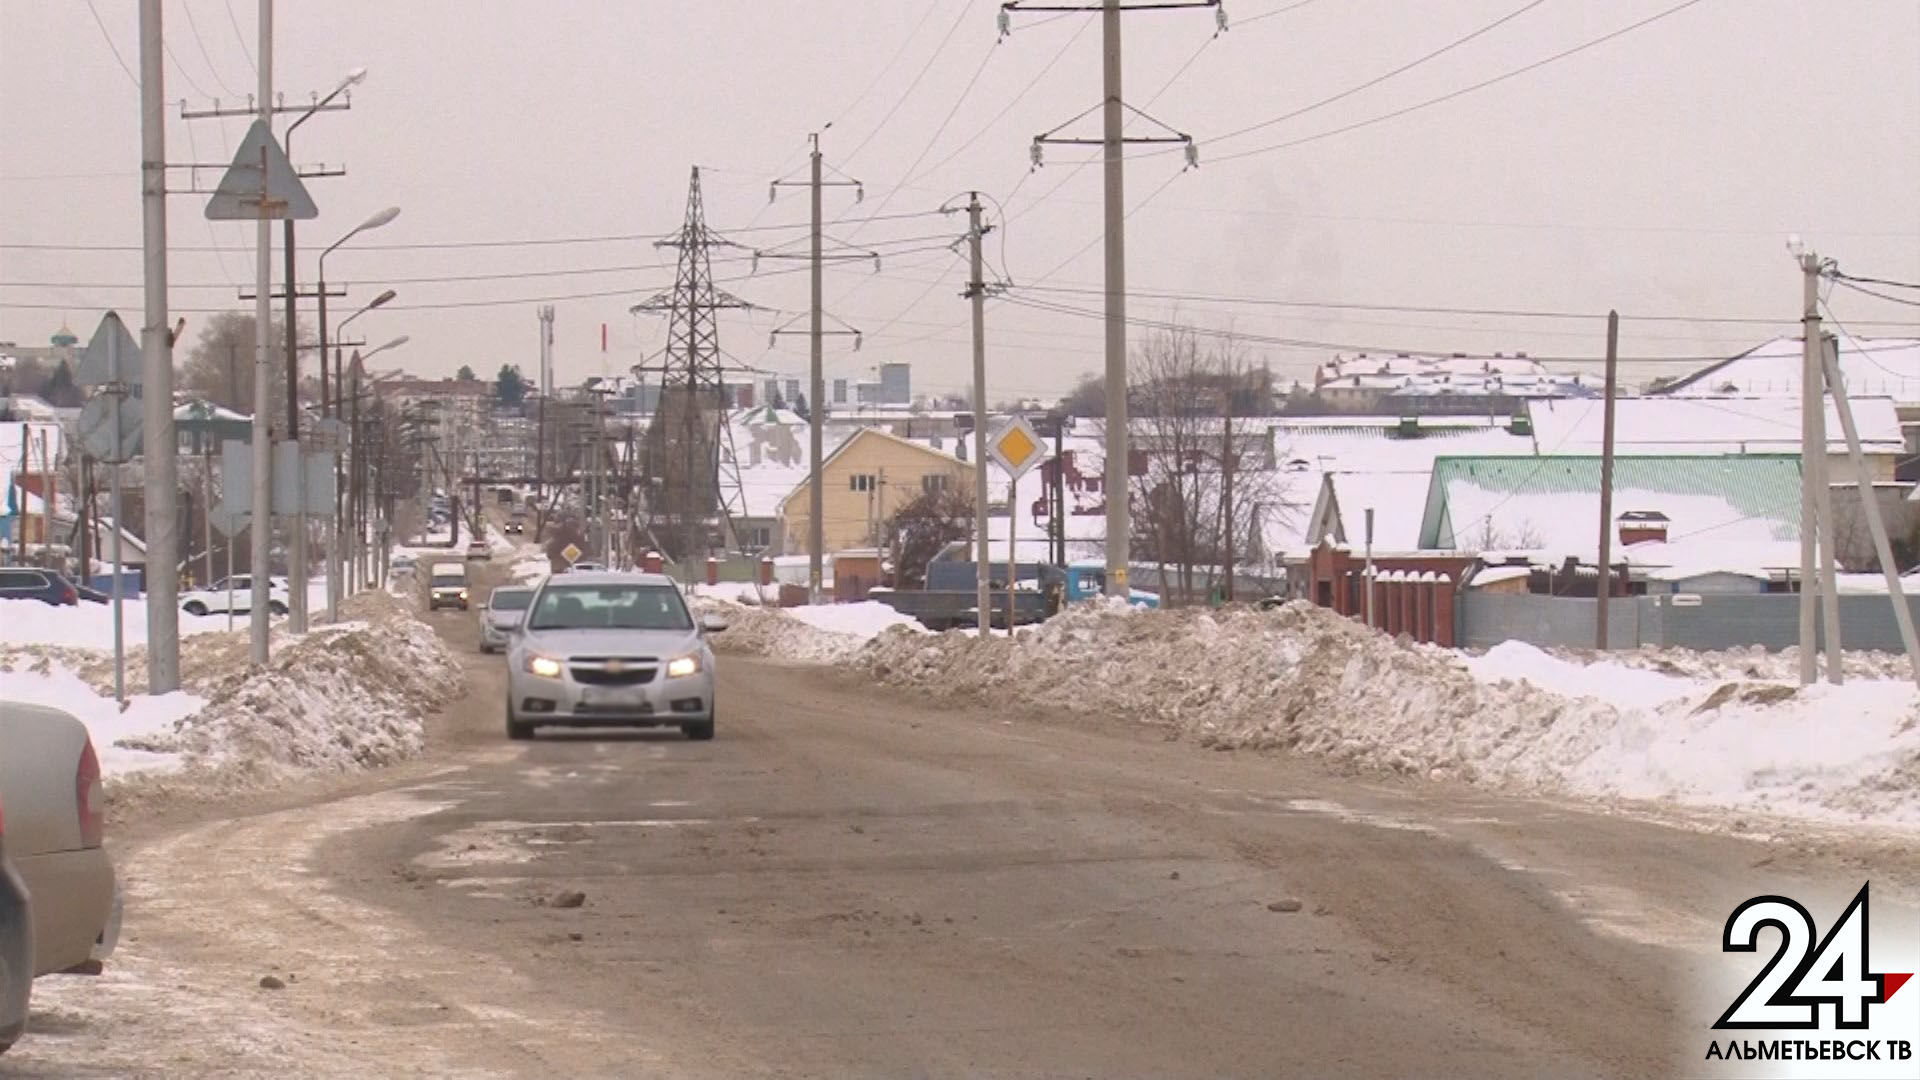 Татарстанцев предупреждают о сильной гололедице на дорогах и снежных заносах